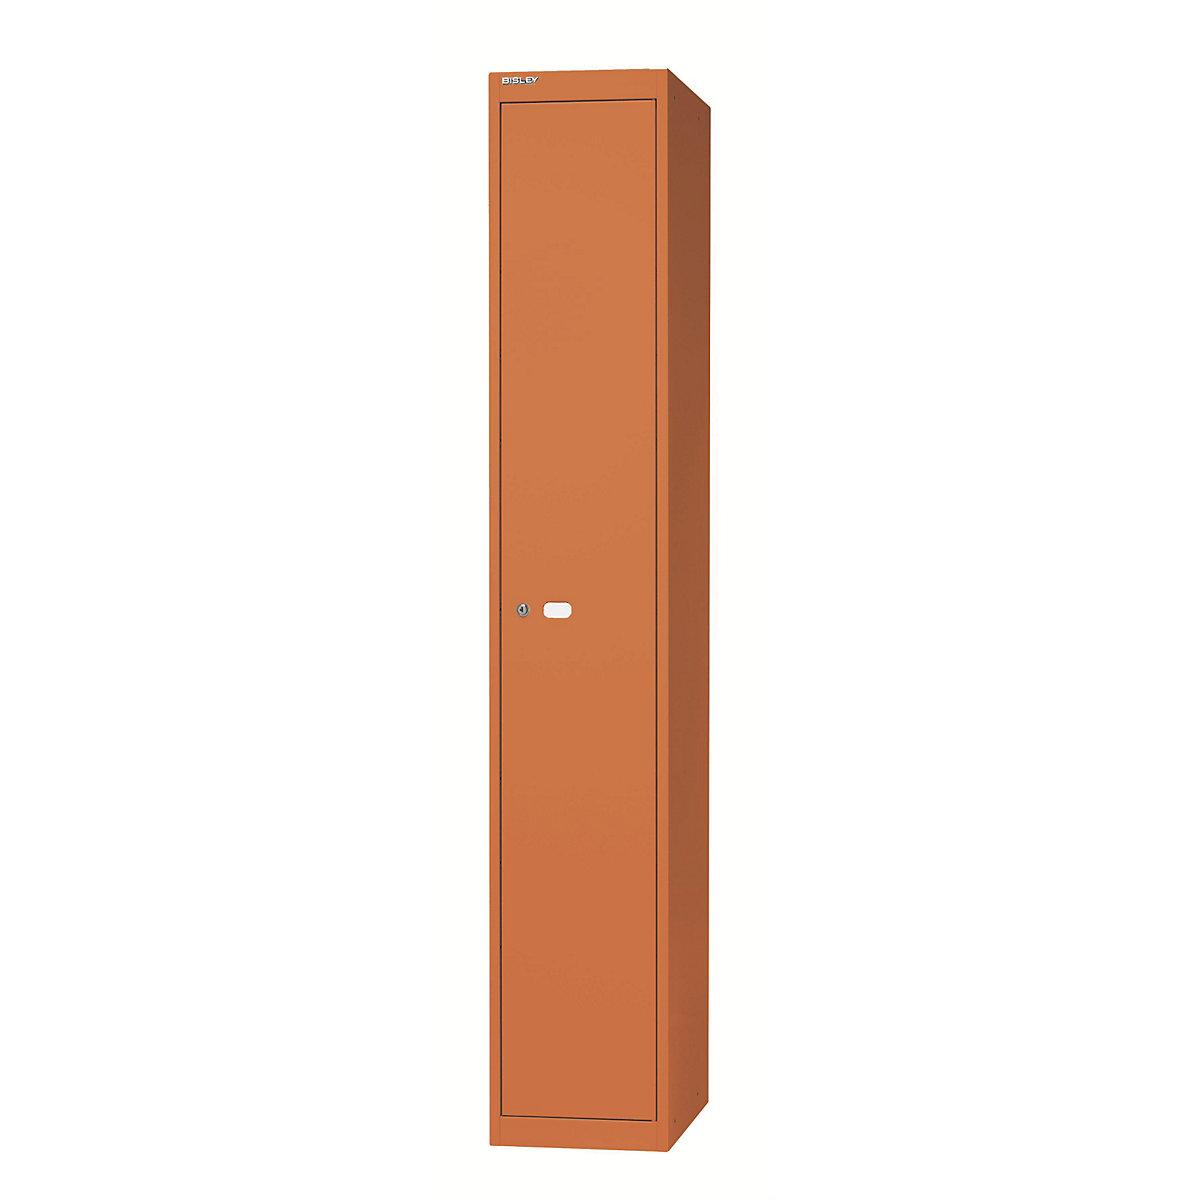 BISLEY OFFICE Garderobensystem, 1 Abteil, Tiefe 305 mm, mit 1 Hutfachboden, 1 Kleiderhaken, orange